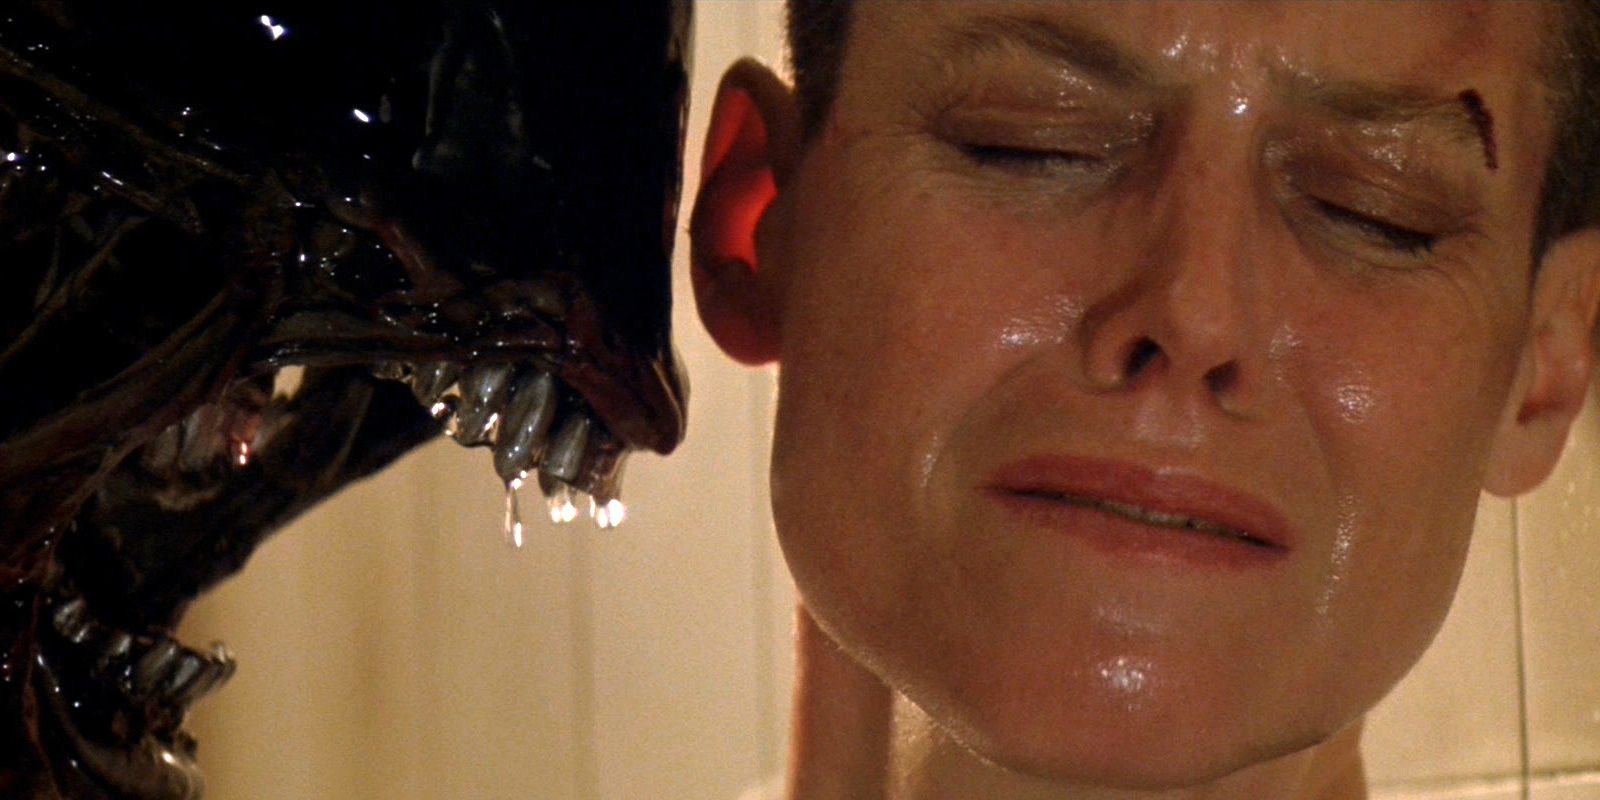 Ellen Ripley is confronted by a xenomorph in Alien 3